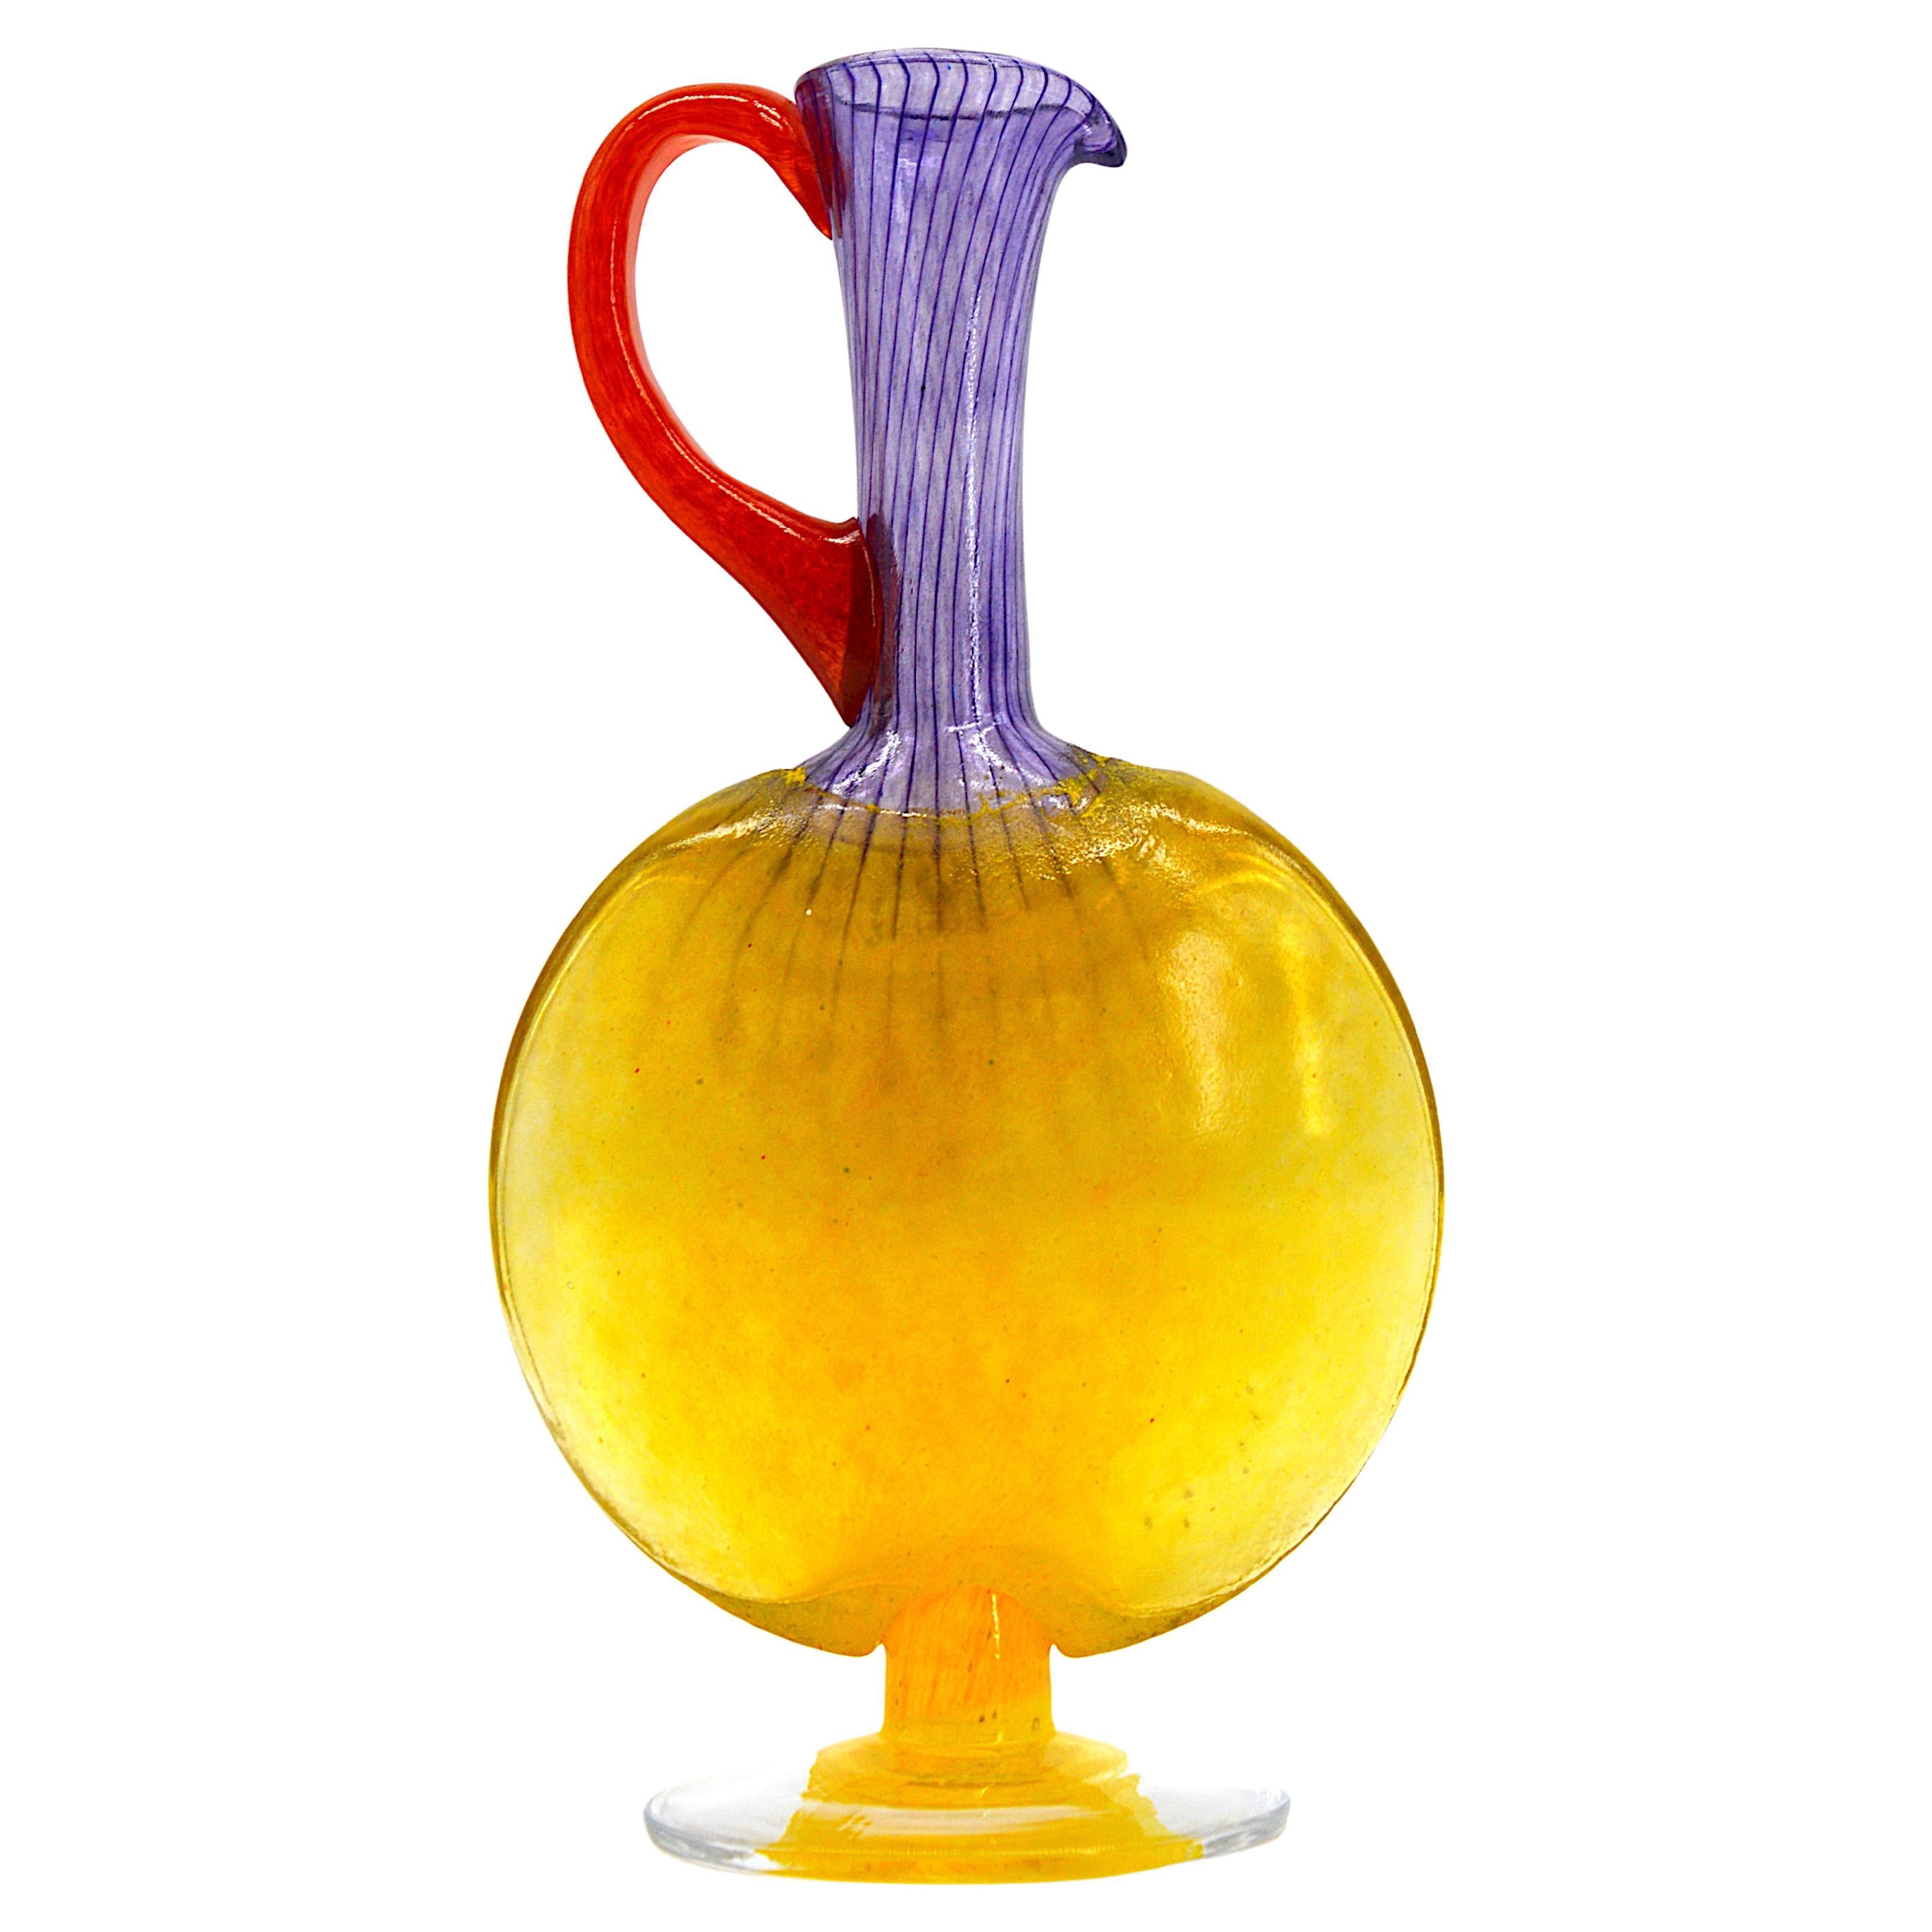 Kunstglaskaraffe von Kjell Engman bei Kosta-Boda, Schweden, Ende der 1990er Jahre. Filigranes Glas mit gelbem Boden und Körper, violettem Hals und rotem Henkel. Maße: Höhe 24 cm (9,5